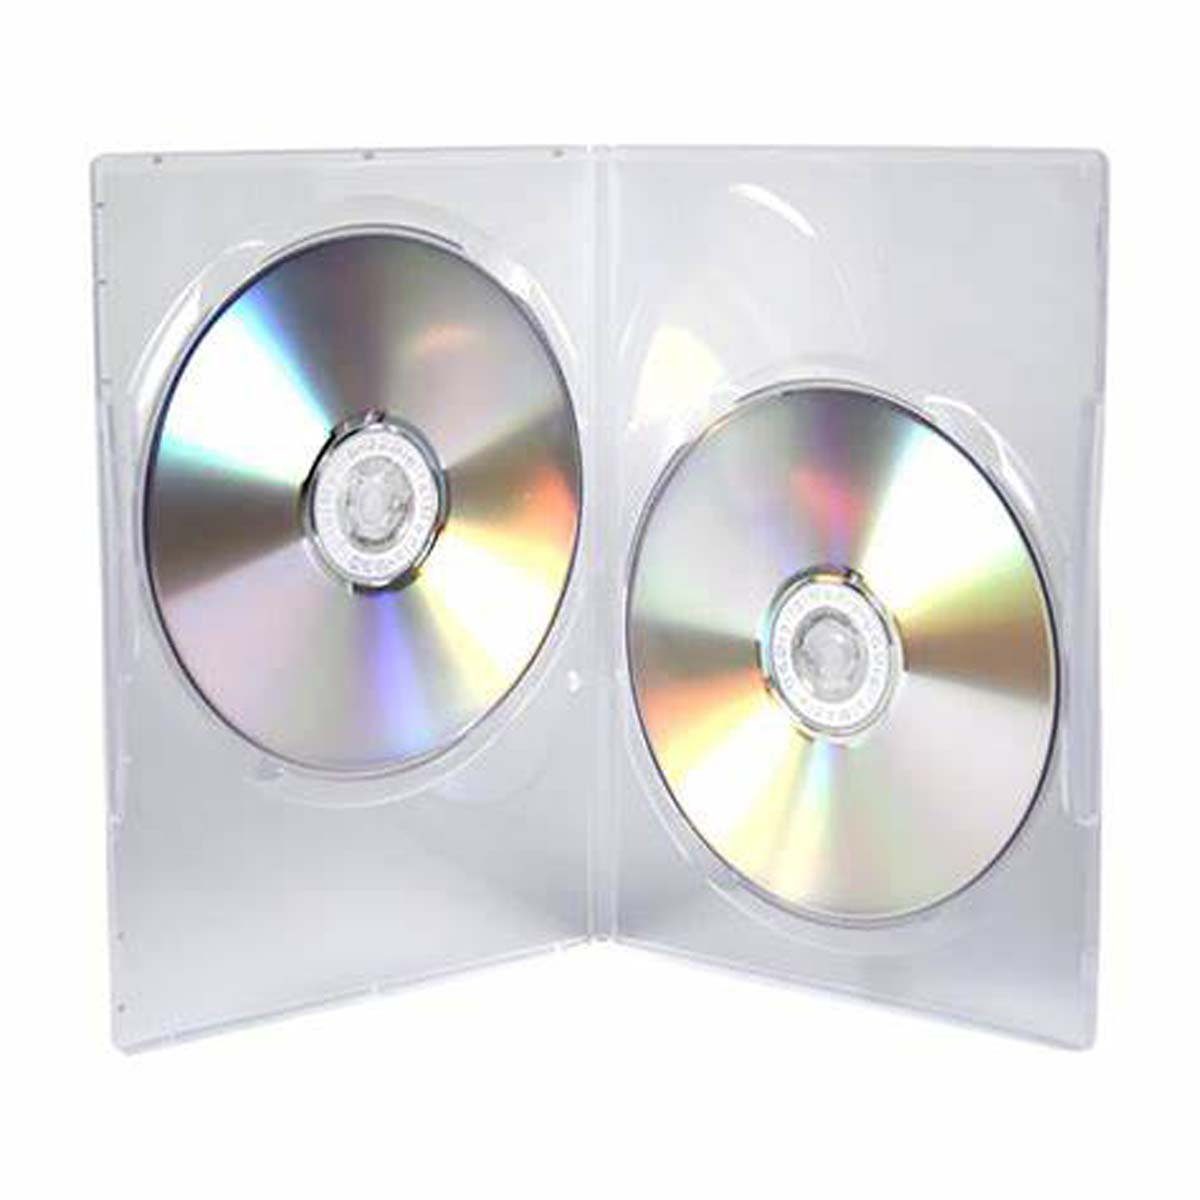 Vivanco CD-Hülle, 10 CD/DVD Slim Pack